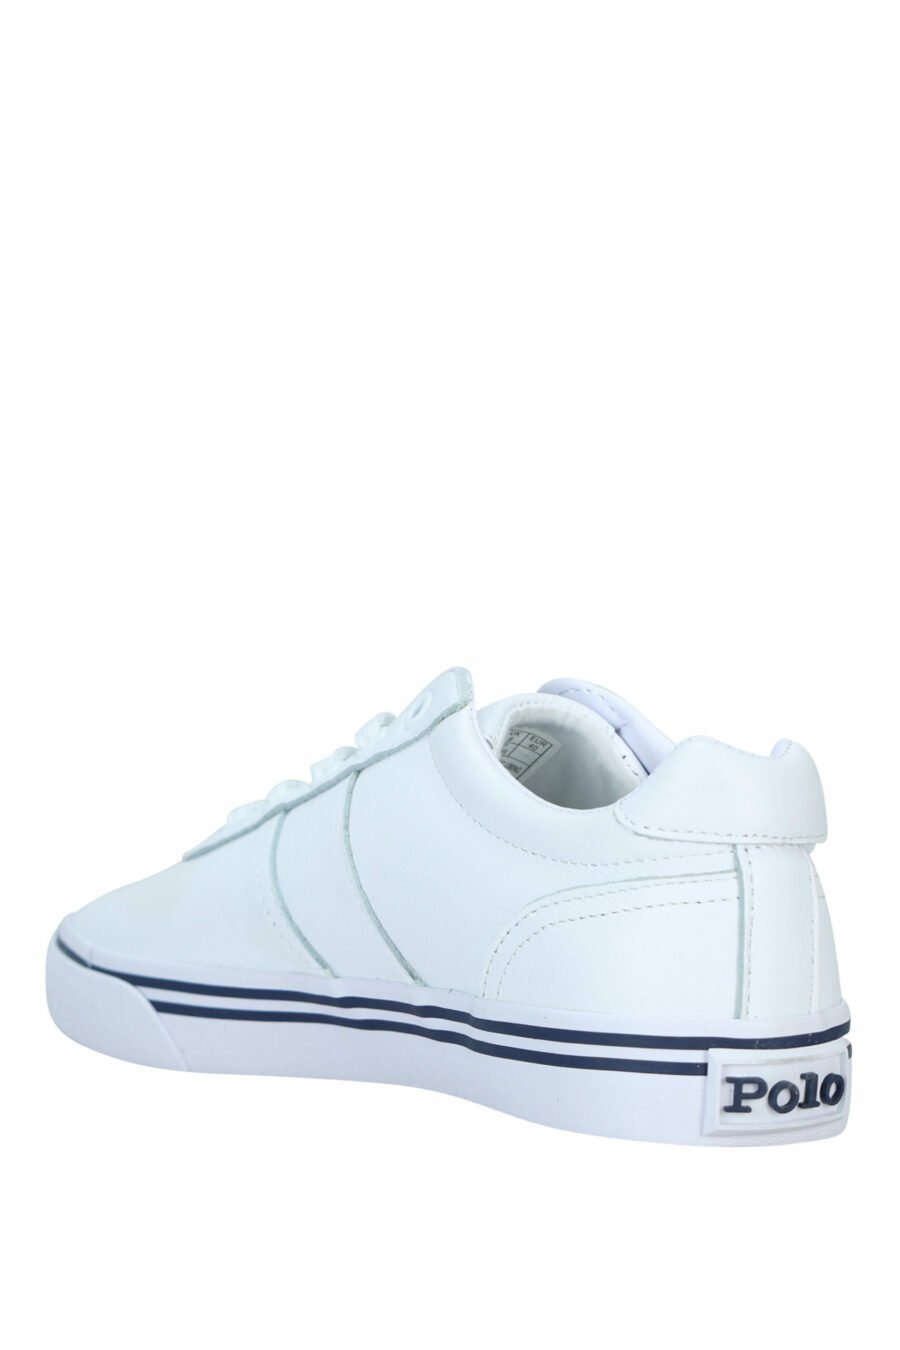 Baskets blanches avec détails bleus et logo "polo" - 3615737560351 3 scaled